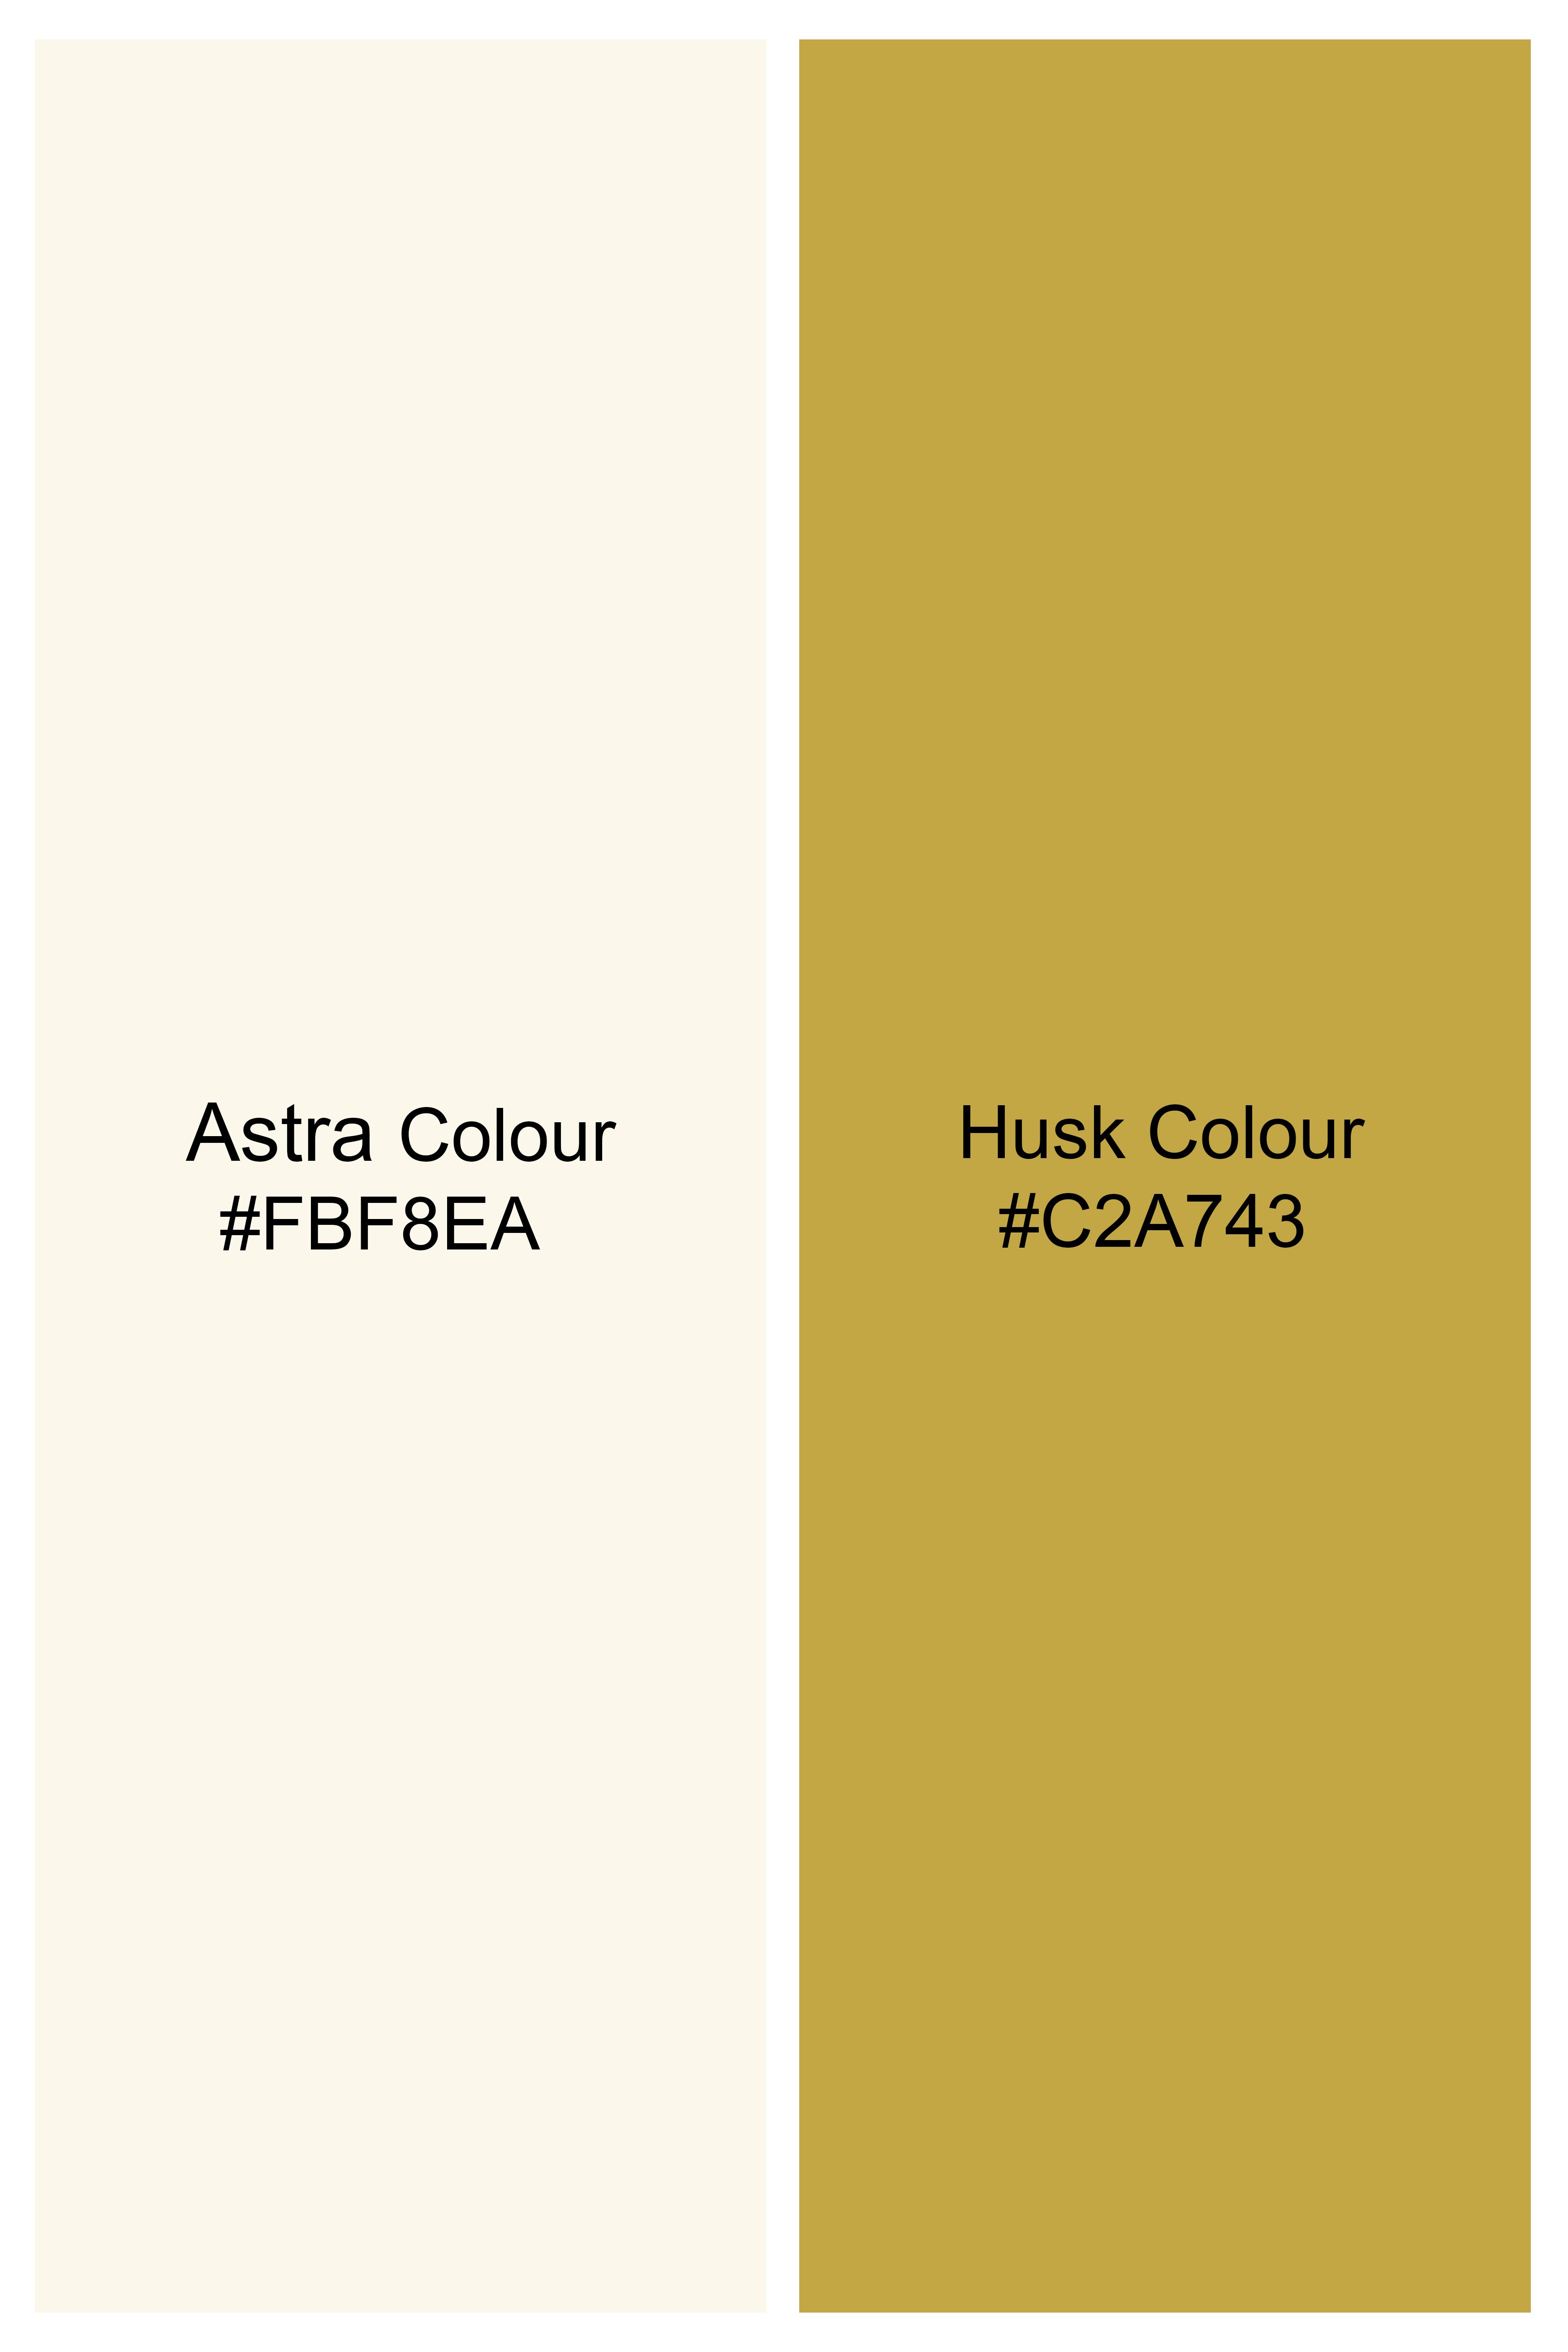 Astra Cream and Husk Yellow Windowpane Premium Cotton Shirt 11752-38, 11752-H-38, 11752-39, 11752-H-39, 11752-40, 11752-H-40, 11752-42, 11752-H-42, 11752-44, 11752-H-44, 11752-46, 11752-H-46, 11752-48, 11752-H-48, 11752-50, 11752-H-50, 11752-52, 11752-H-52